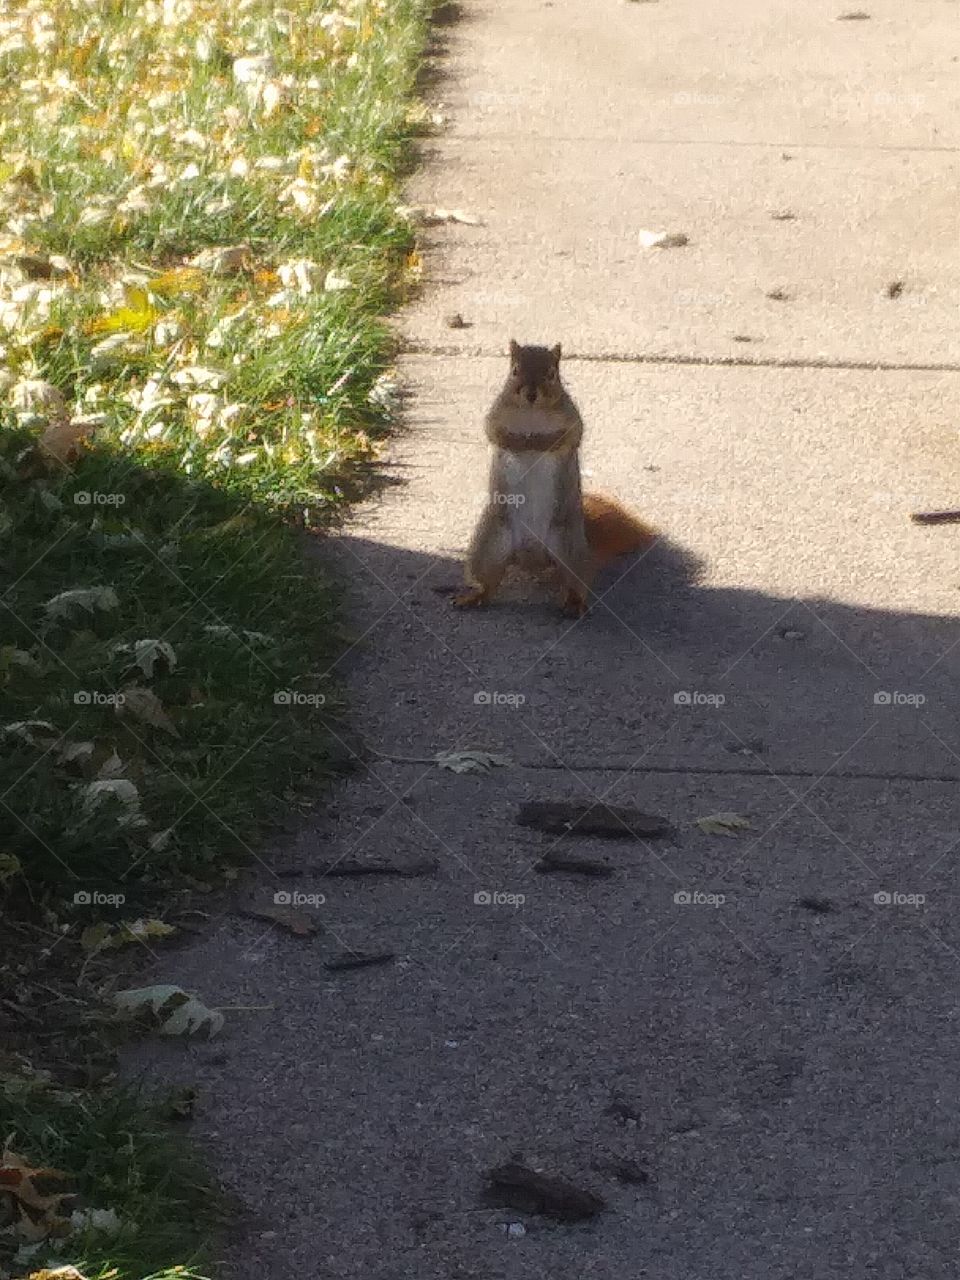 Squirrel!